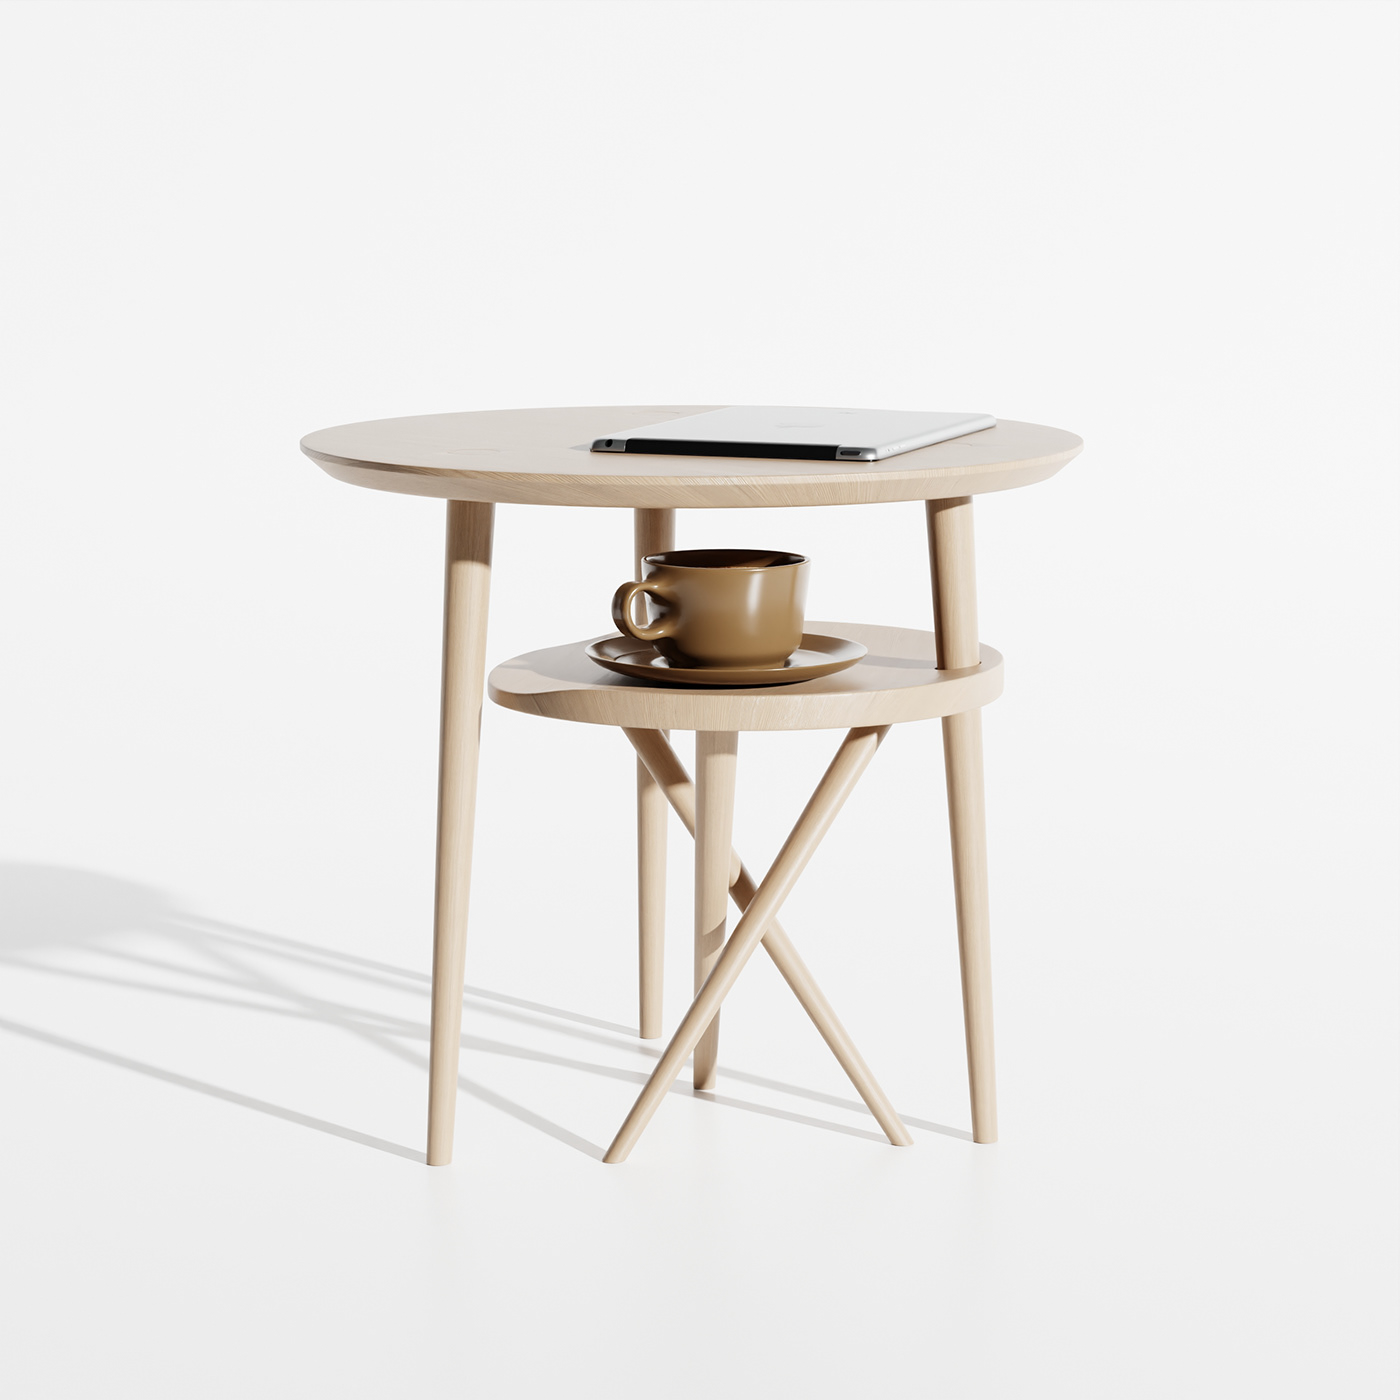 blender design designer furniture interior design  living room product design  Render side table wood